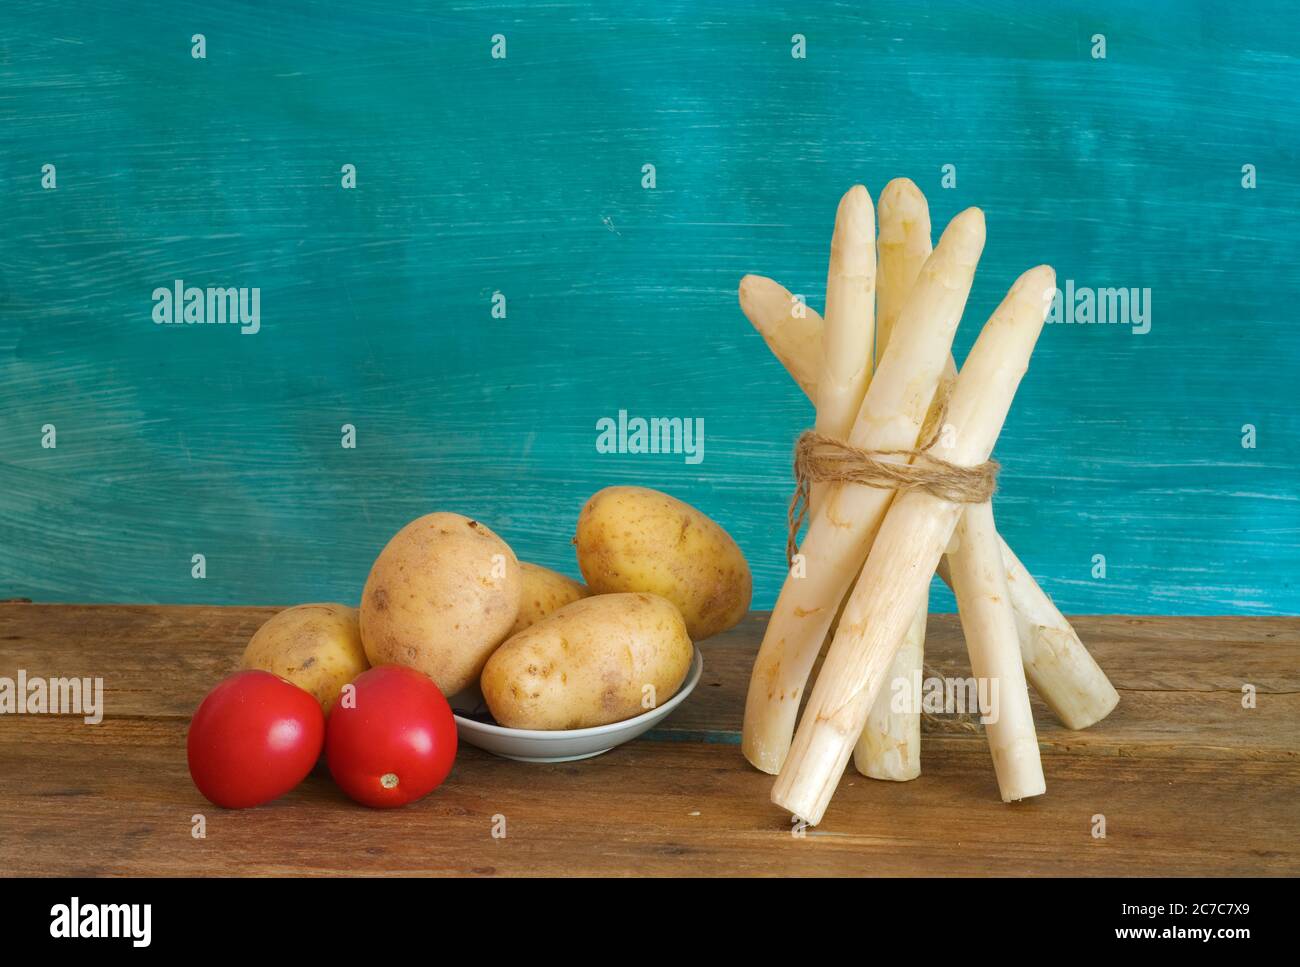 fascio di asparagi bianchi, patate e tomatos, spazio libero per la copia Foto Stock